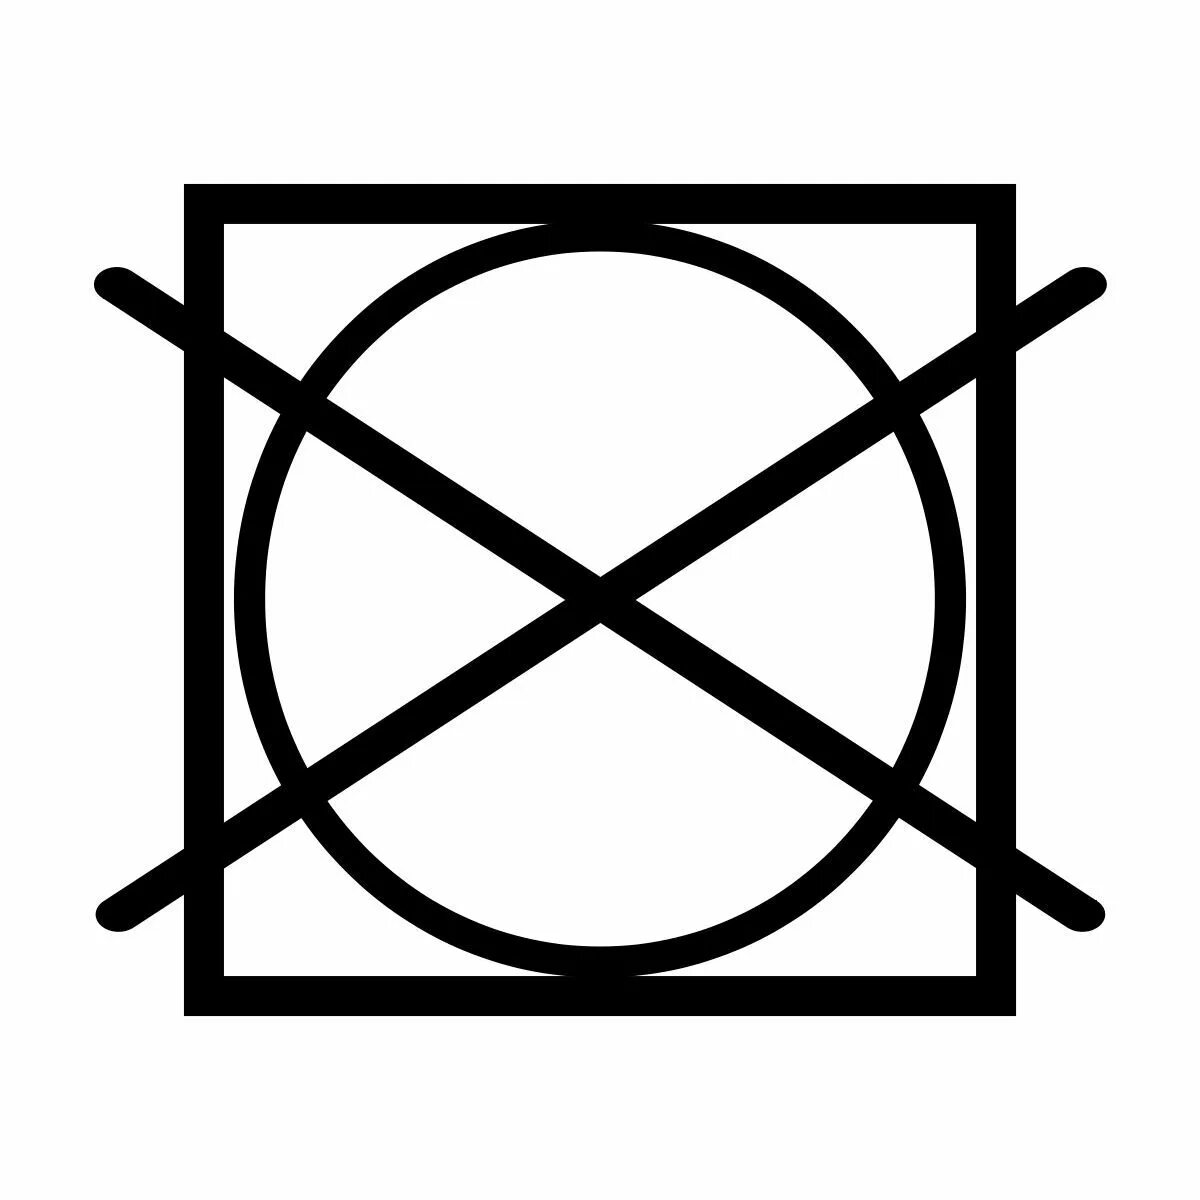 Круг на бирке. Значок круг в квадрате перечеркнутый. Пиктограмма не отжимать. Барабанная сушка запрещена значок. Машинная сушка запрещена значок.